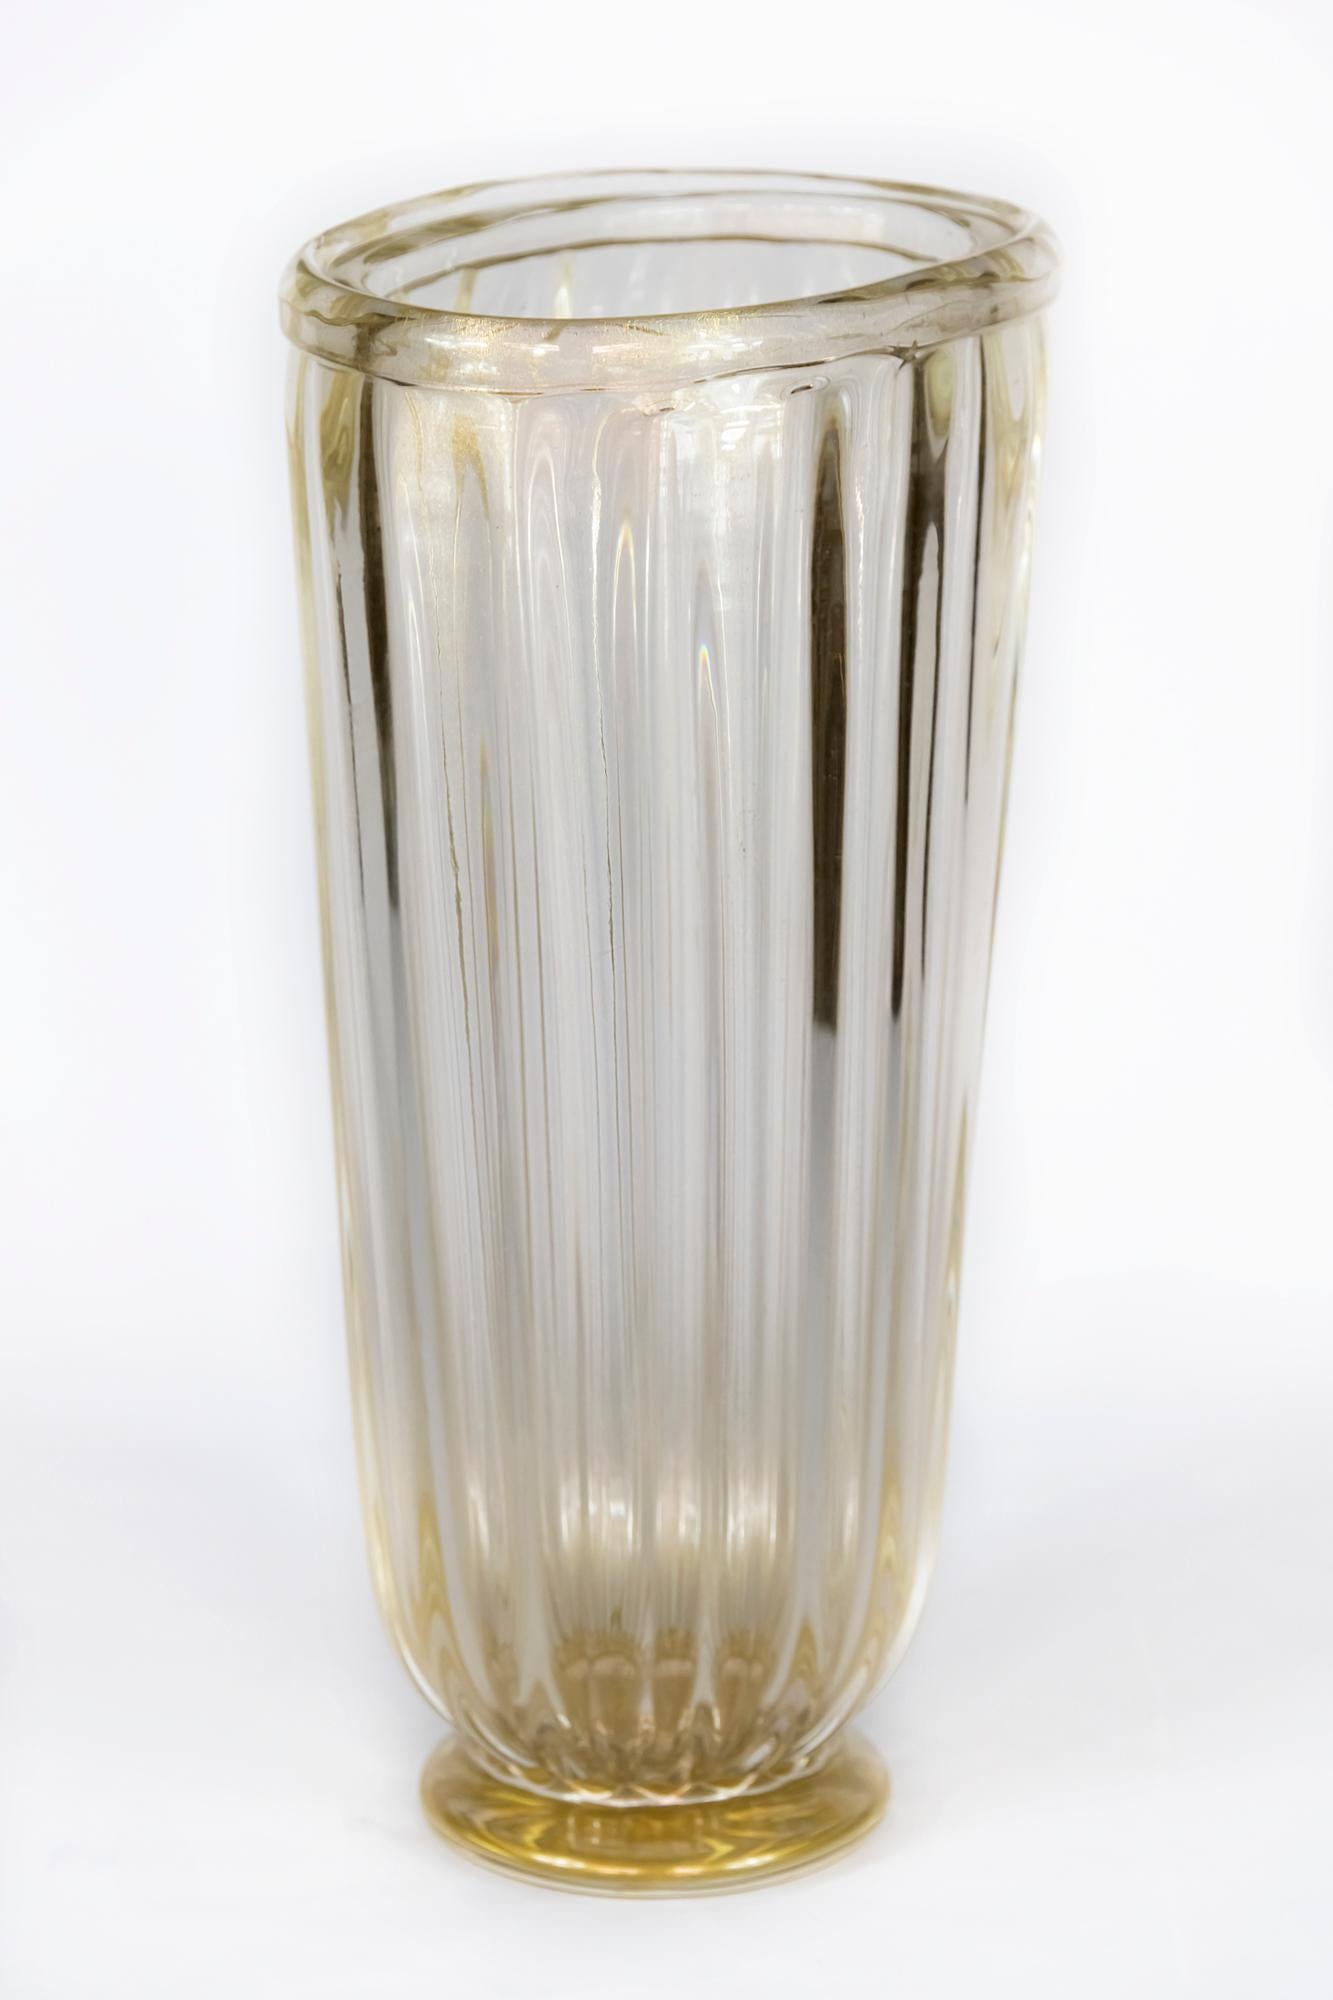 Handgefertigte italienische Vase in assymetrischer/ovaler Form aus transparentem Murano-Glas mit eingelegtem Goldstaub.
 